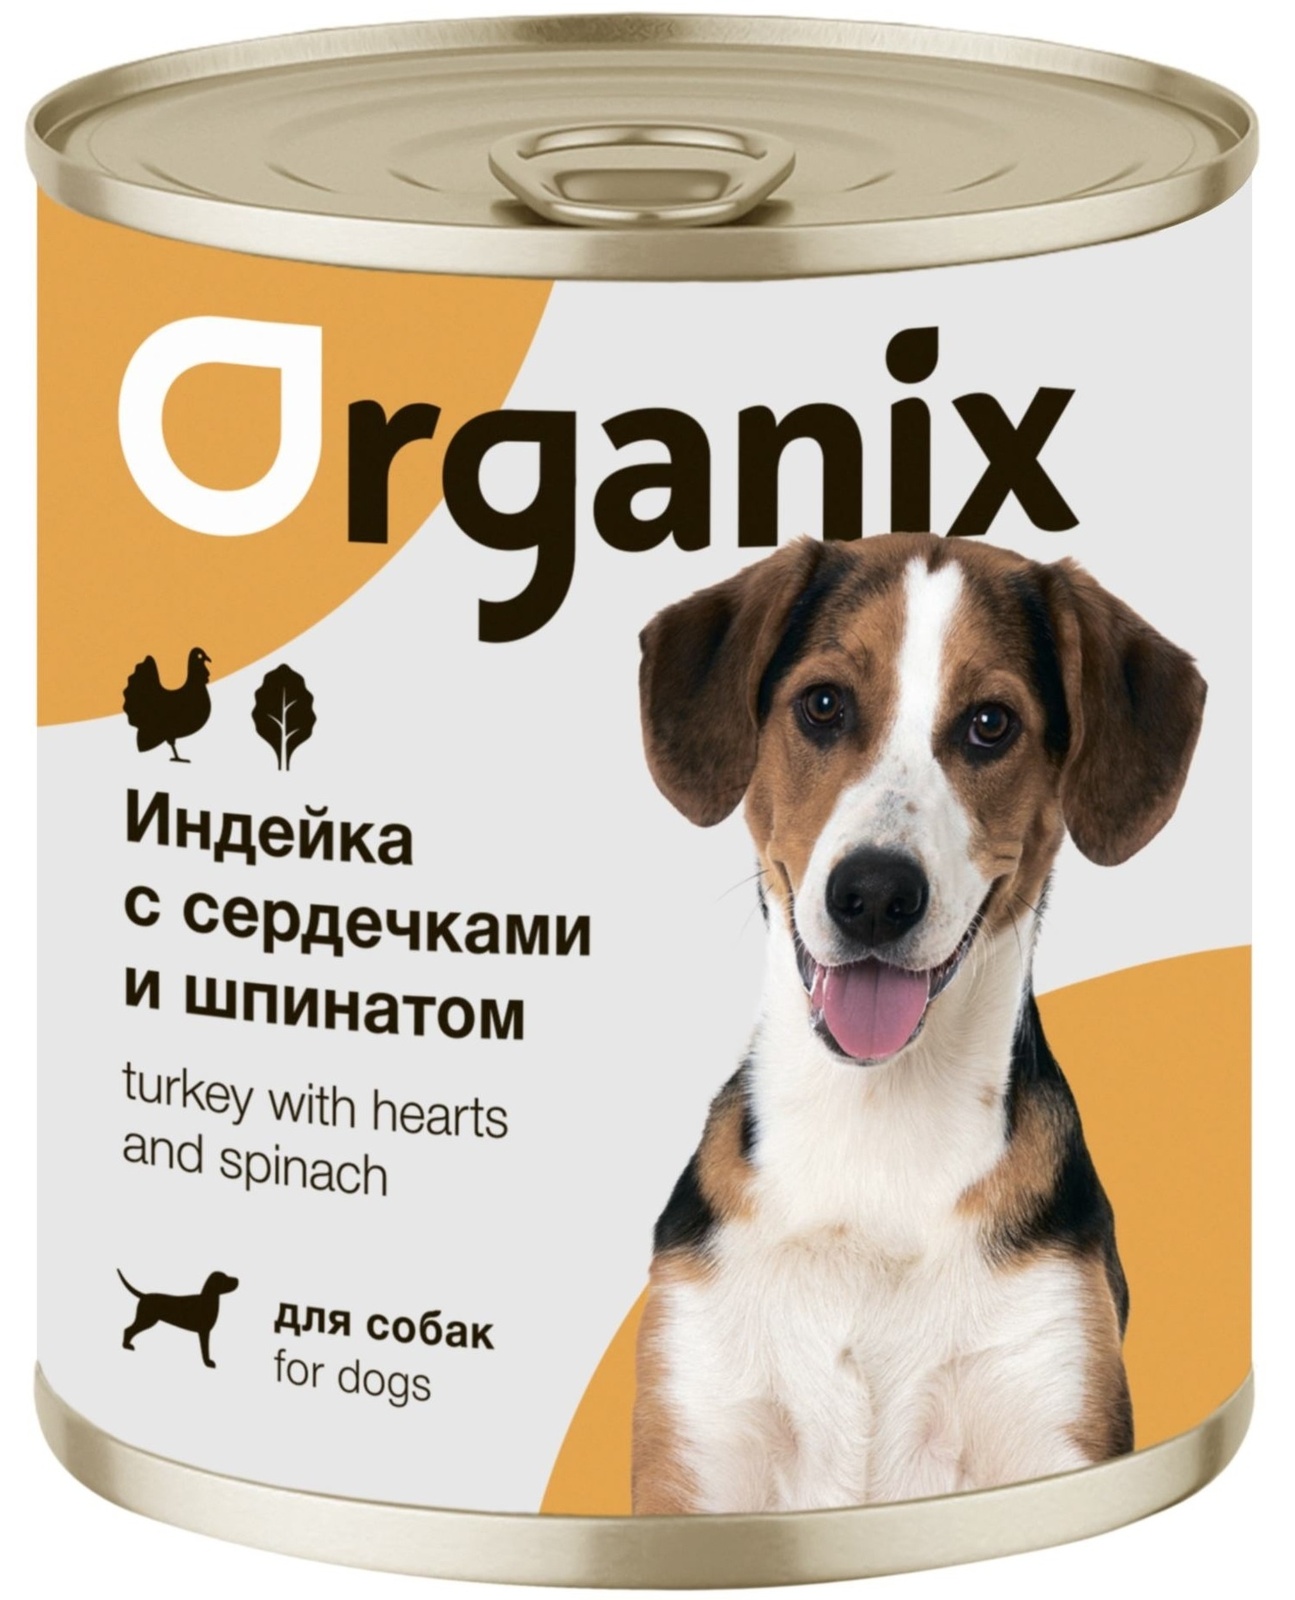 Organix консервы Organix консервы для собак Индейка с сердечками и шпинатом (400 г) organix консервы organix монобелковые премиум консервы для собак с кониной 400 г